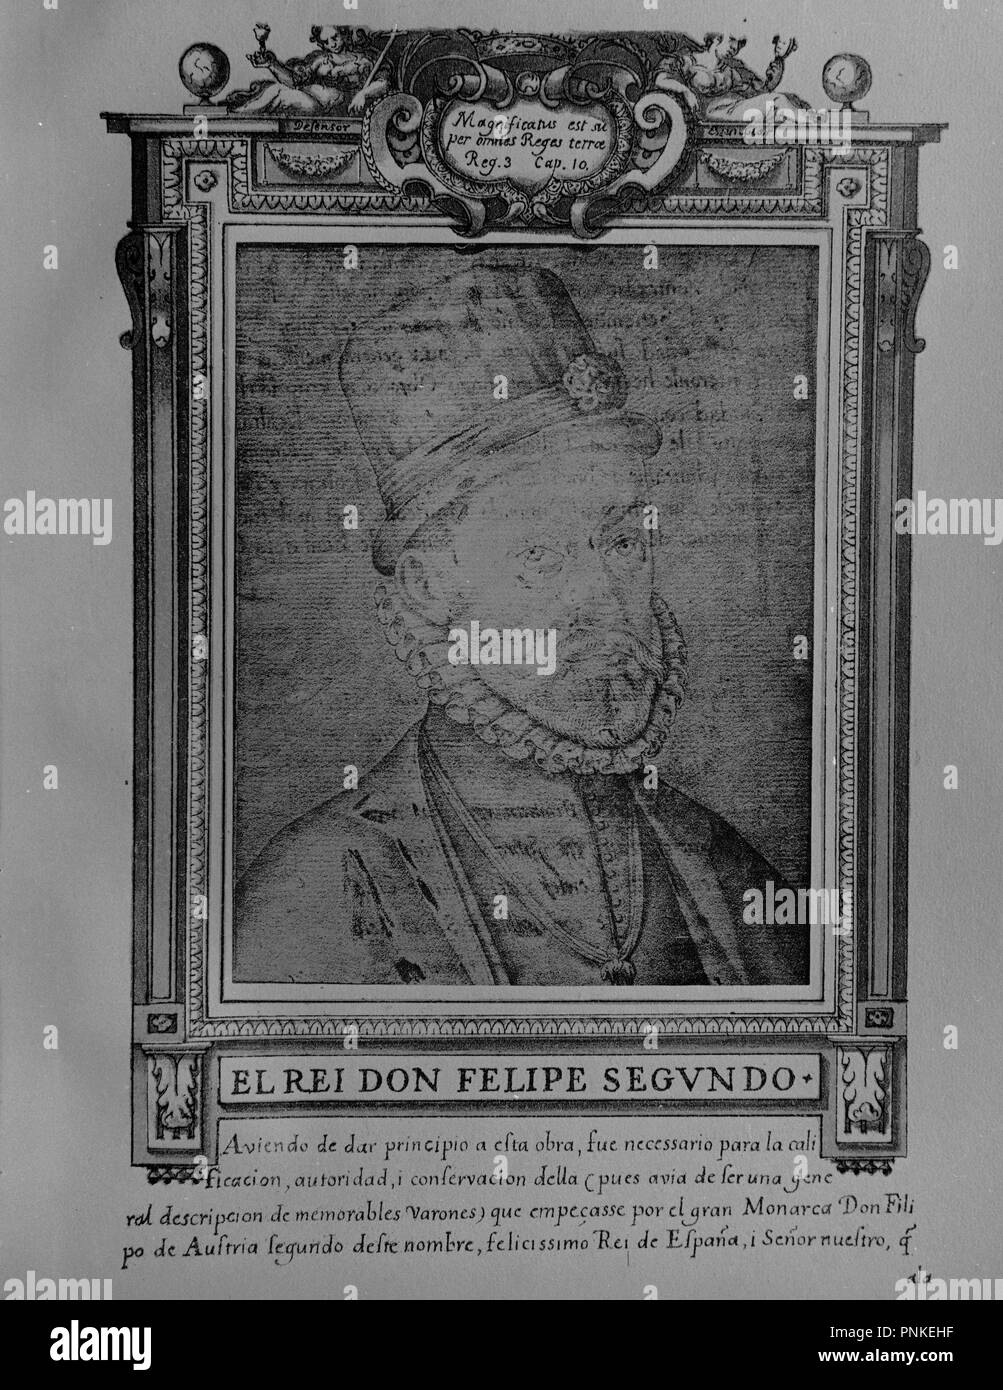 FELIPE II (1527-1598) - LIBRO DE RETRATOS DE ILUSTRES Y MEMORABLES VARONES - 1599. Author: PACHECO, FRANCISCO. Location: MUSEO LAZARO GALDIANO-COLECCION. MADRID. SPAIN. Stock Photo